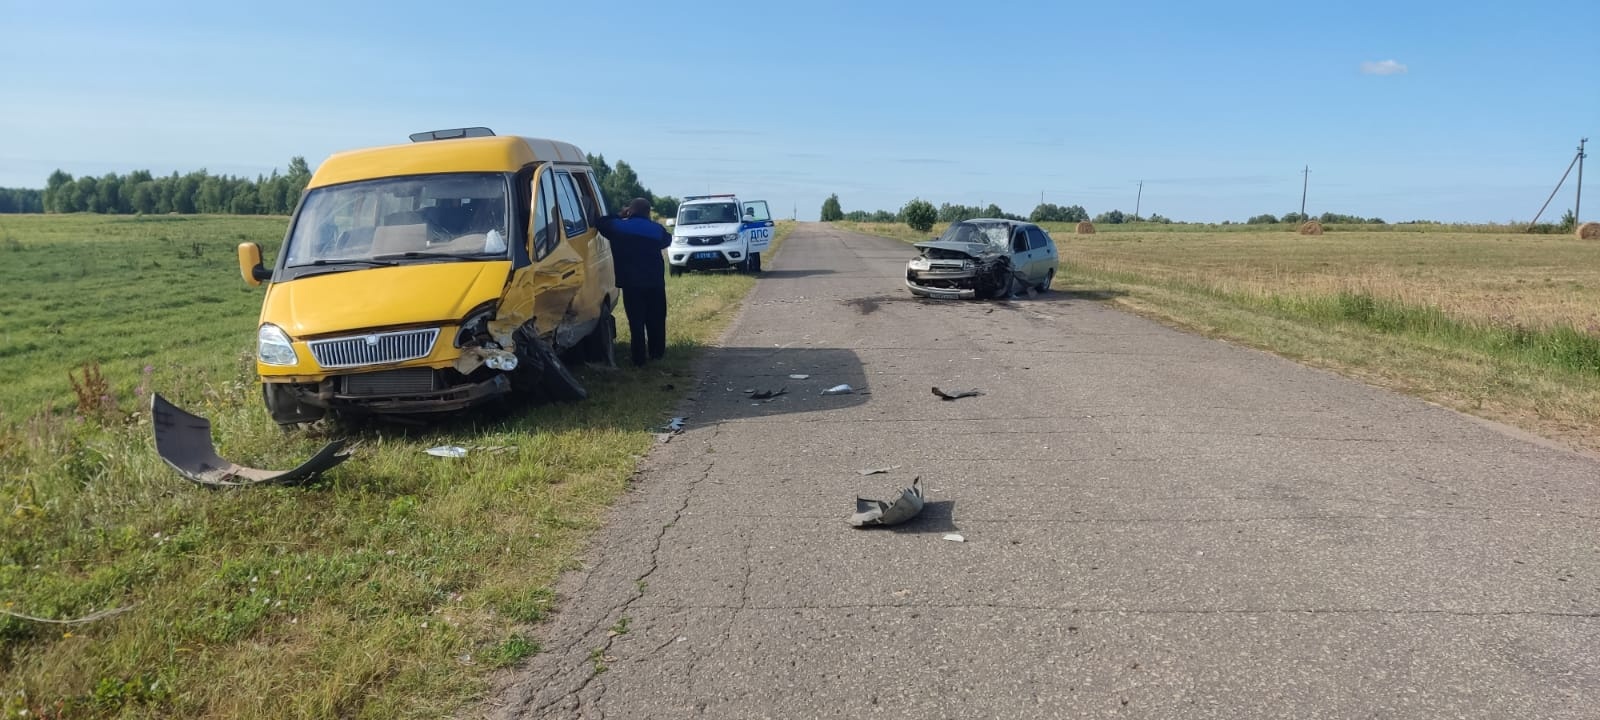 В утреннем ДТП в Сернурском районе пострадал водитель легковушки: виновник мог быть пьян